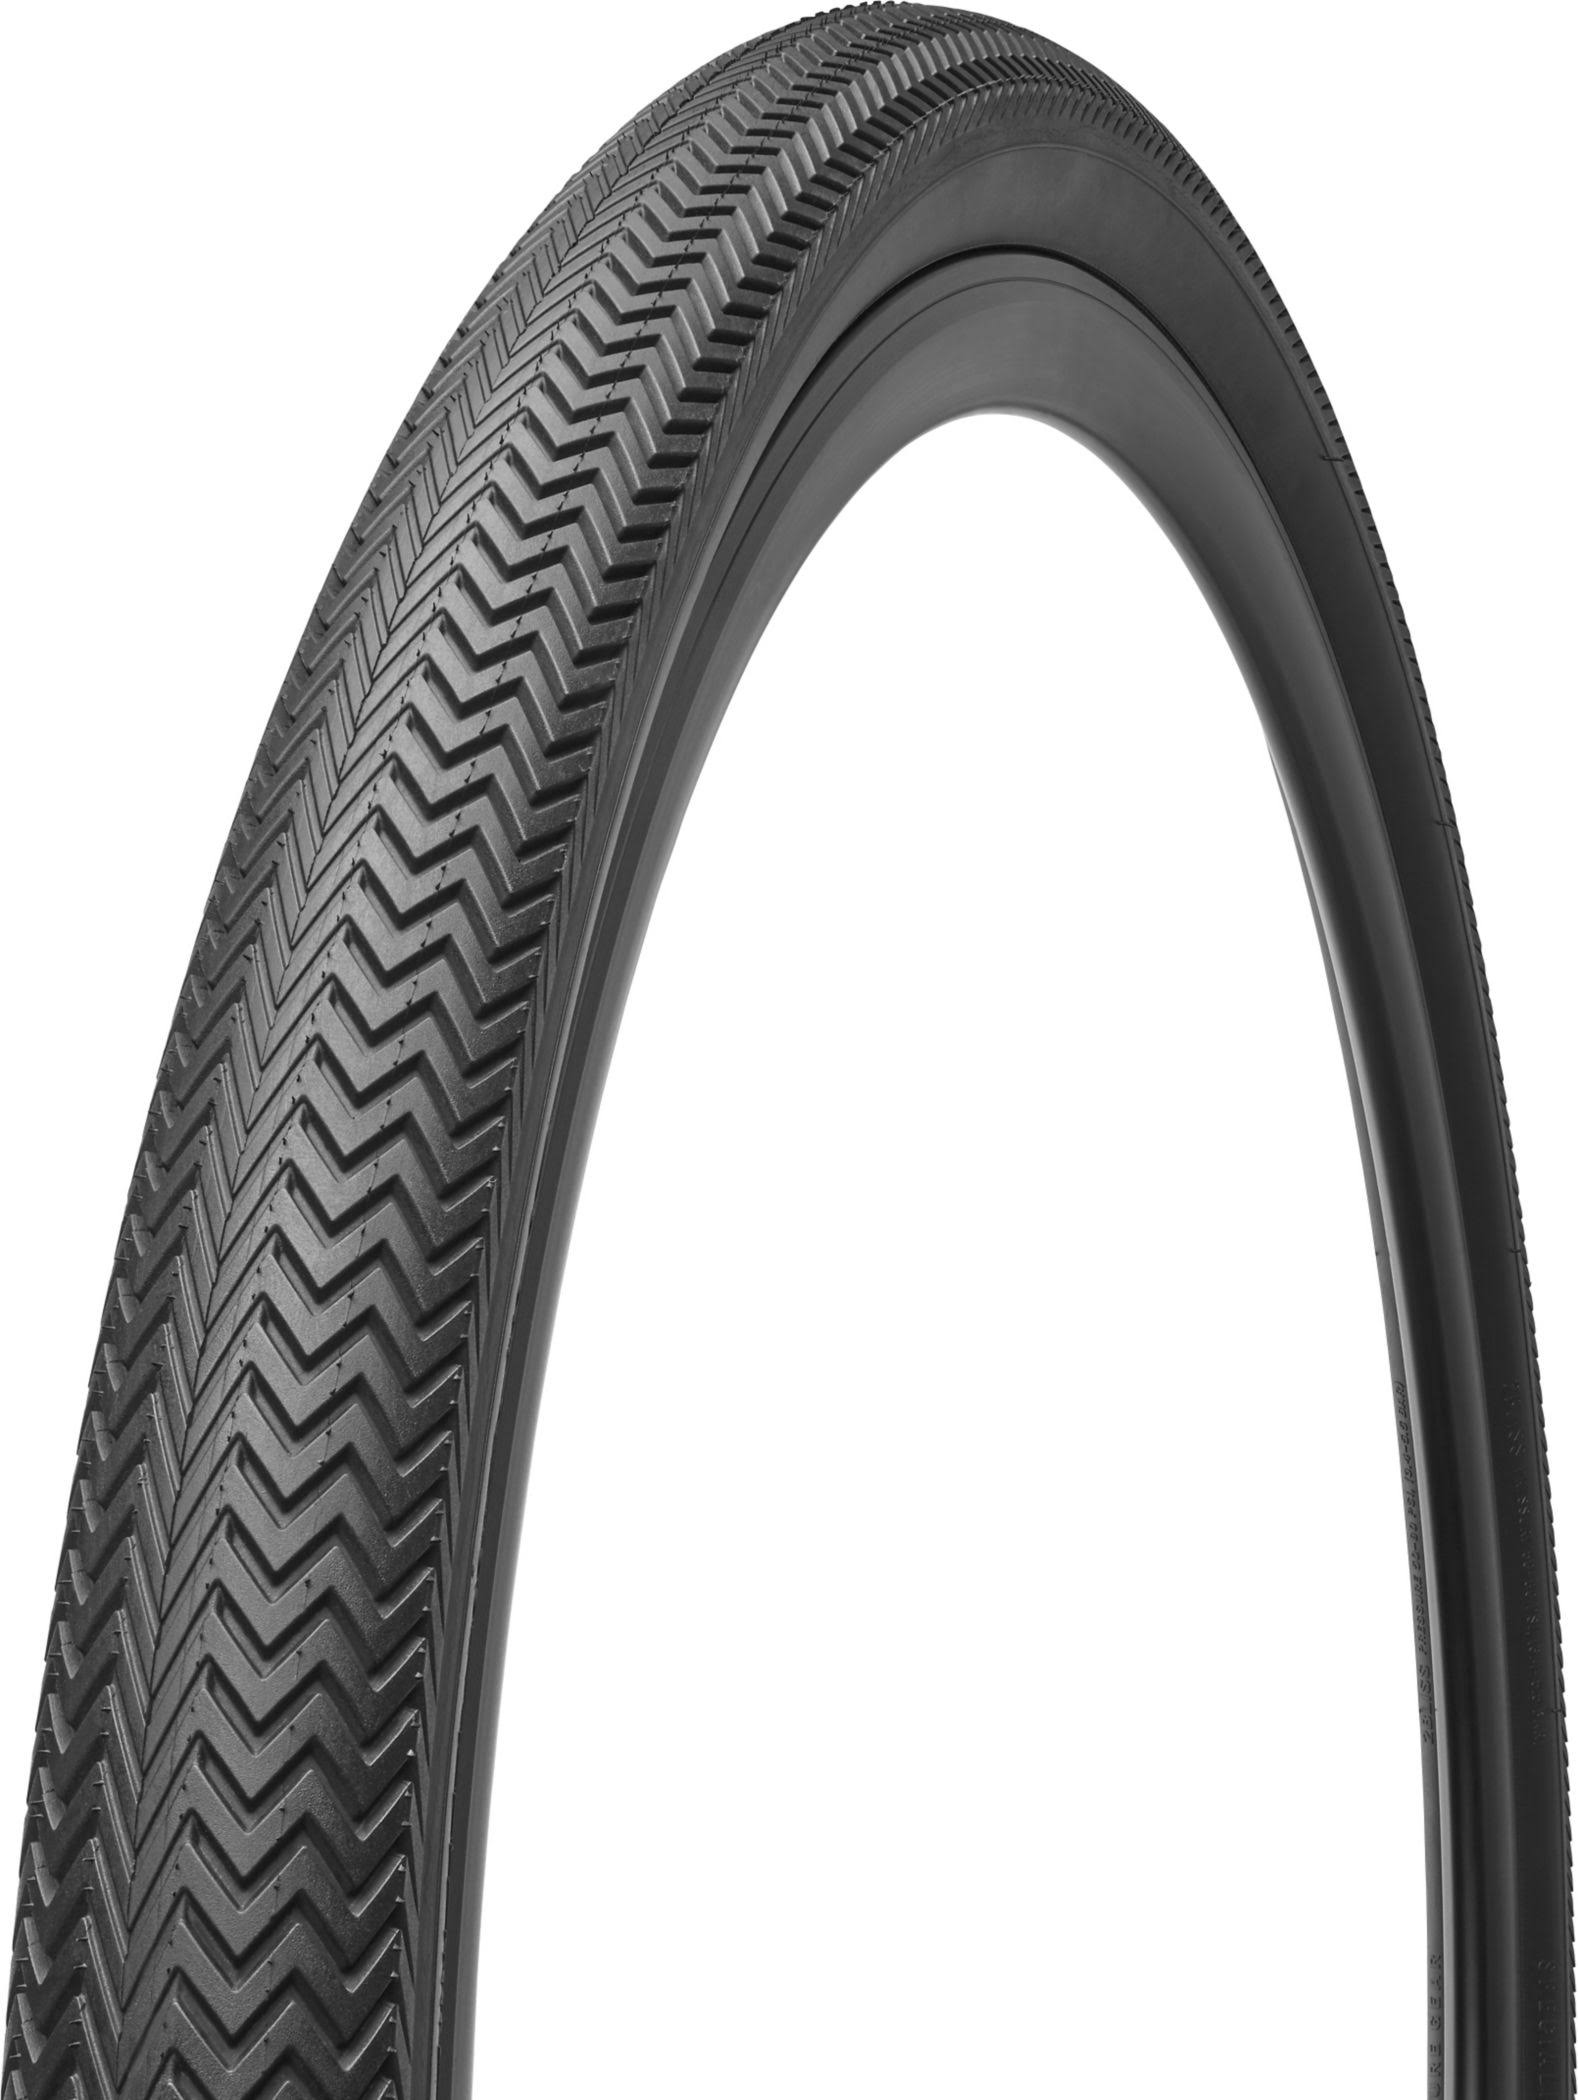 Specialized Sawtooth 2Bliss Ready Tire - Black, Size 700 x 38